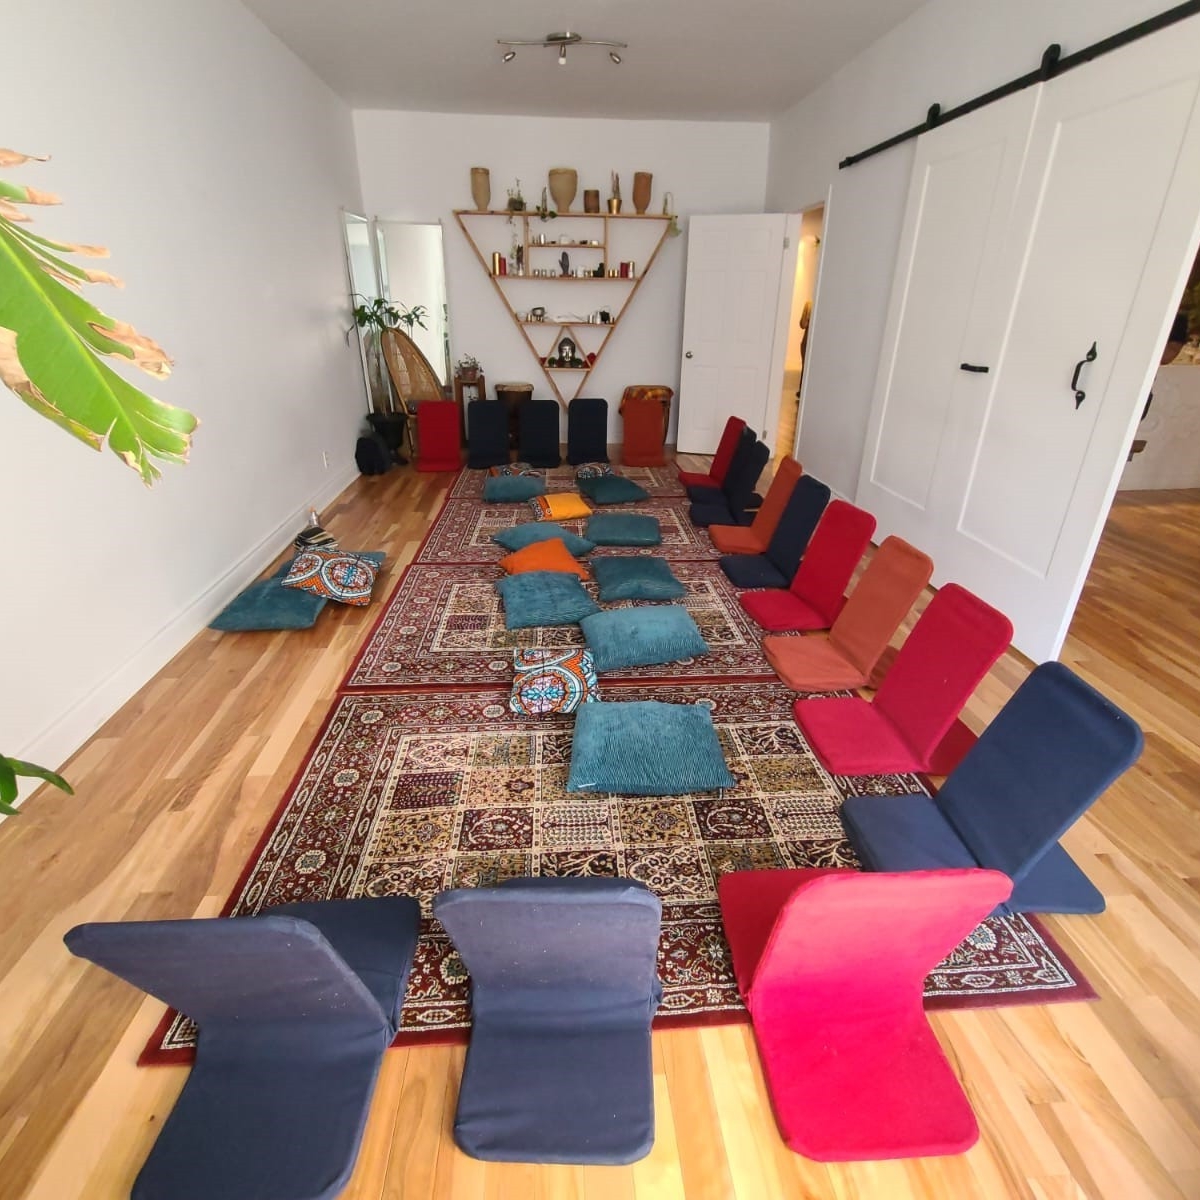 Une salle avec des coussins et chaises colorées prêt pour un atelier/cercle de guérison